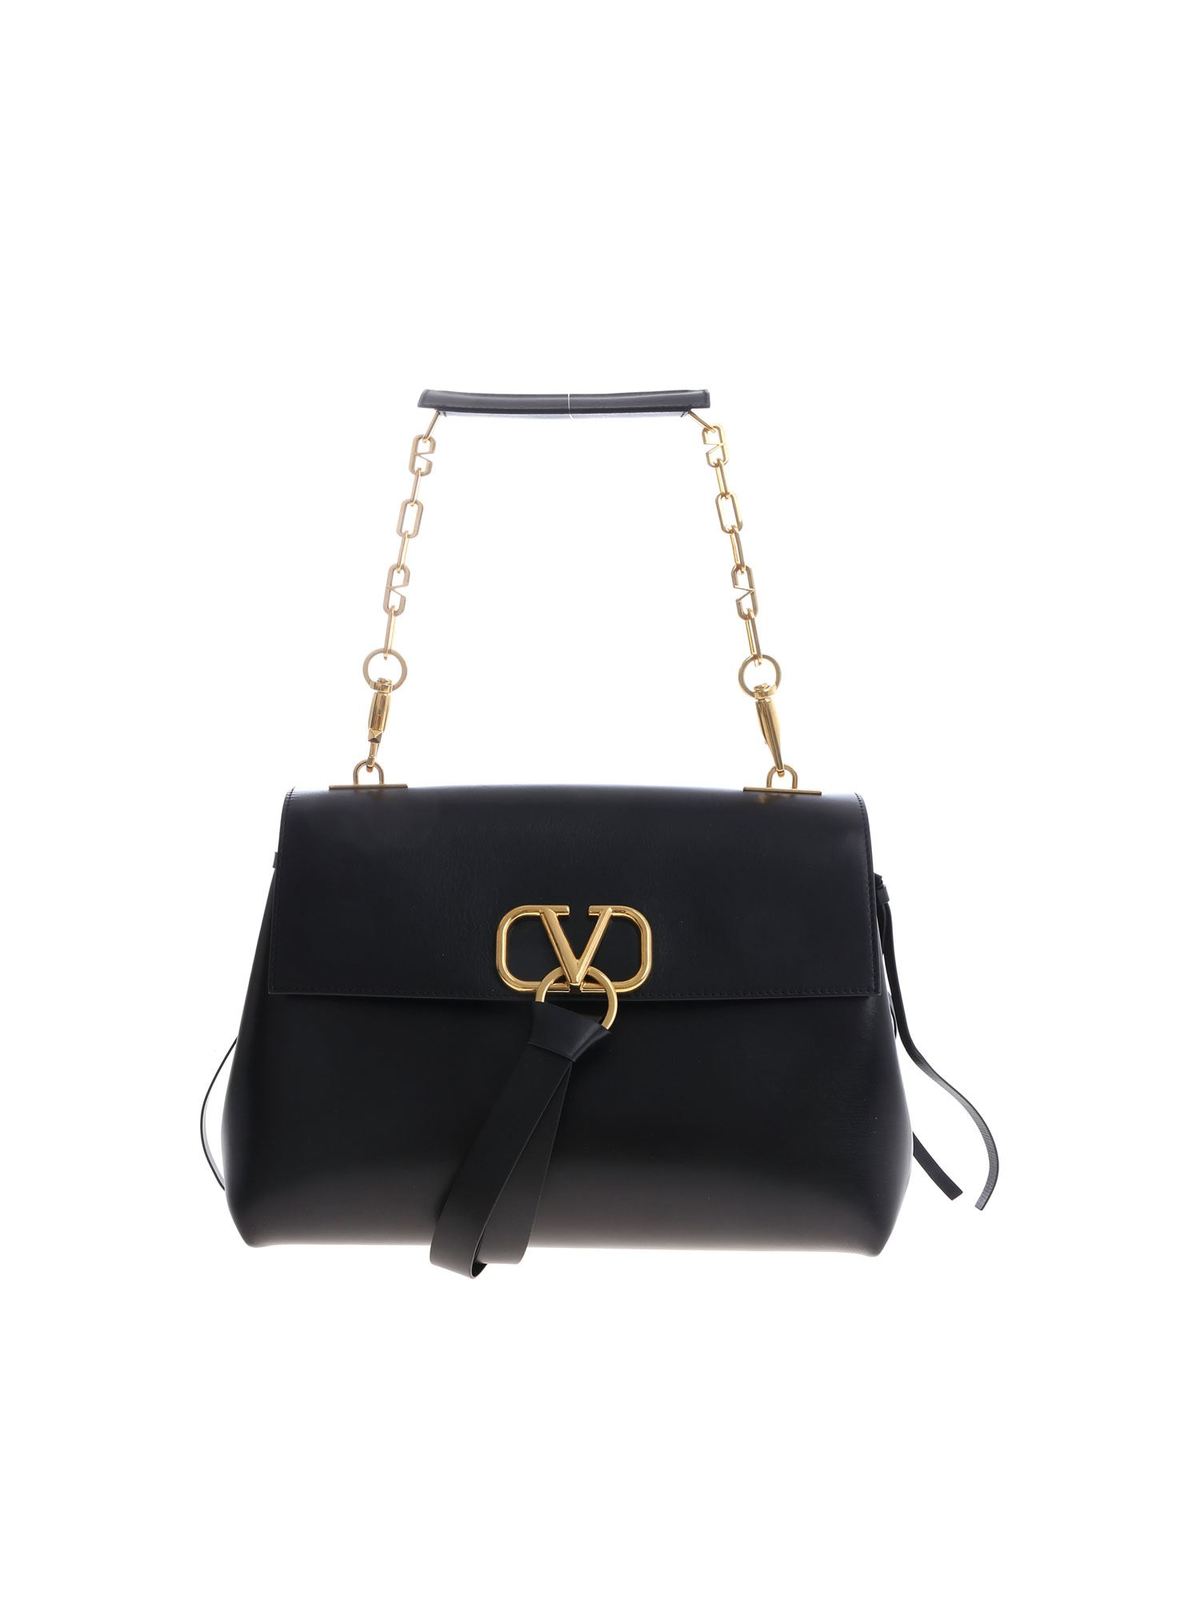 Valentino Vring Shoulder Bag - Black Shoulder Bags, Handbags - VAL377346